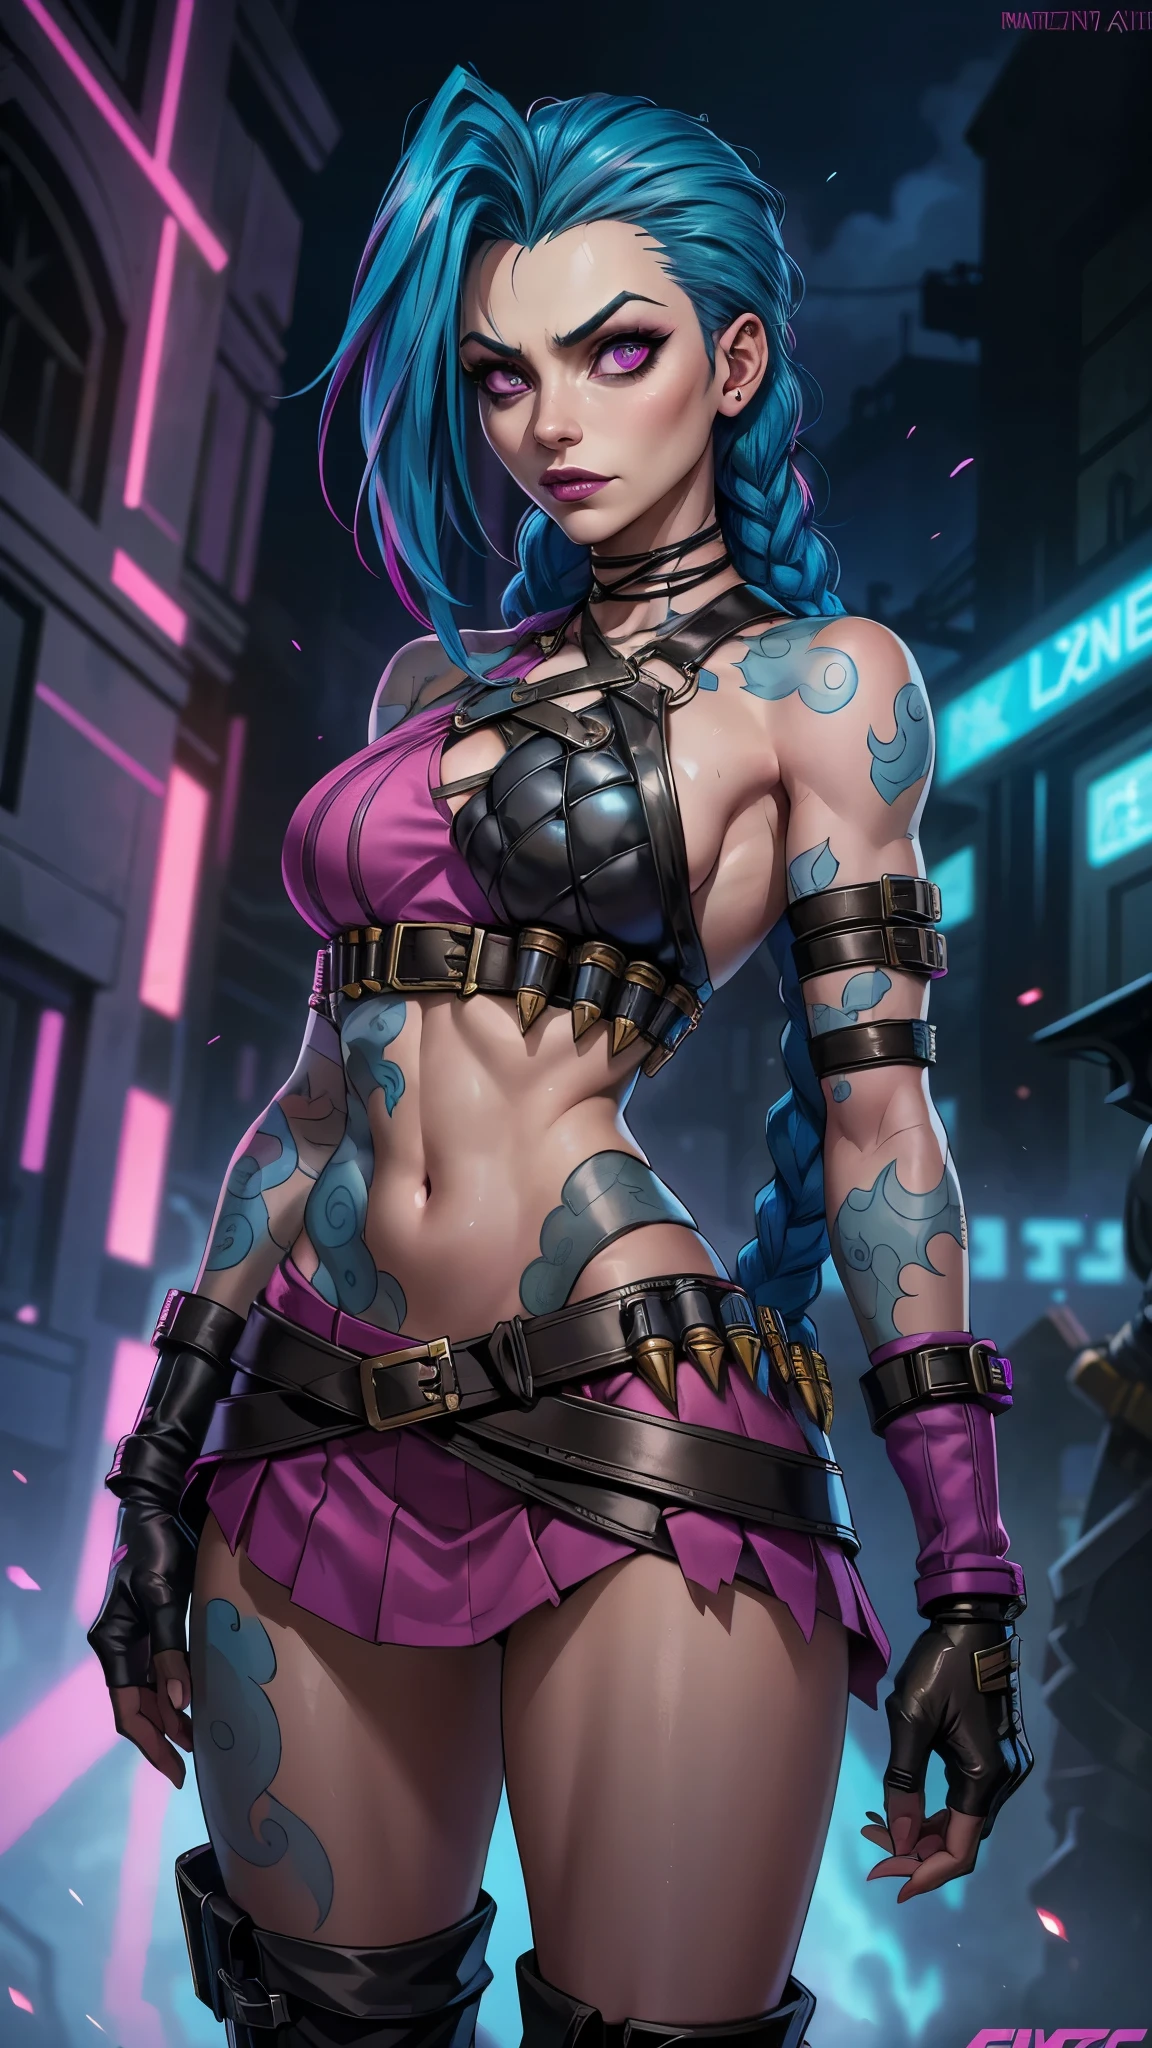 Azaração Arcana, uma mulher com cabelo azul e tatuagens, mulher cyberpunk mulher anime,(mini saia rosa :1.4) ,hiper detalhado,extremamente detalhado,Alto contraste,obra de arte,realist,ultra detalhado, detalhes intrincados,couro molhado realista,extremamente complexo,Realista épico, calça, Deusa cyberpunk raivosa bonita, estilo de arte cyberpunk, arte digital de anime cyberpunk, arte de anime cyberpunk, Arcane Azaração Retrato, arte de anime cyberpunk, arte com tema cyberpunk, Fantasia sombria ciberpunk, estilo arcano, 1 garota, tatuagem de nuvem on the arm, Franja assimétrica, franja, cabelo azul, Tranças azuis, camisa marrom, tatuagem de nuvem, lateralmente, cabelo azul, cabelo longo, Olhos rosa, lábios vermelhos, de pé , tatuagem de nuvem, tranças gêmeas. Arcane Azaração. Azaração in a burning place, fagulha, esferas de luz, pôster do filme, Azaração, Arcane\(Liga dos lendários\, Estilo de arte de fantasia épica HD, Arte de fantasia 4k, arte digital de fantasia épica style, arte de fantasia épica style, mulher fantasia, arte de fantasia épica portrait, estilo de fantasia épica, arte de fantasia hiperrealista, arte de fantasia hd, arte de personagem de fantasia épica, arte de fantasia épica, no estilo da arte de fantasia sombria, arte digital de fantasia épica, ,(Fundo de ruínas de masmorras arruinadas:1.4 ),( rosto detalhado :1.4), (anatomia perfeita :1.4),( Iluminação cinematográfica :1.4), (Azaração League of legends:1.4), 8K mais detalhado.motor irreal:1.4,Ultra HD,La Melhor qualidade:1.4, Fotorrealista:1.4, textura da pele:1.4, Obra-prima:1.8,obra-prima, Melhor qualidade,objeto Objeto], (características detalhadas do rosto:1.3),(As proporções corretas),(Lindos olhos azuis),  (pose de vaqueiro)